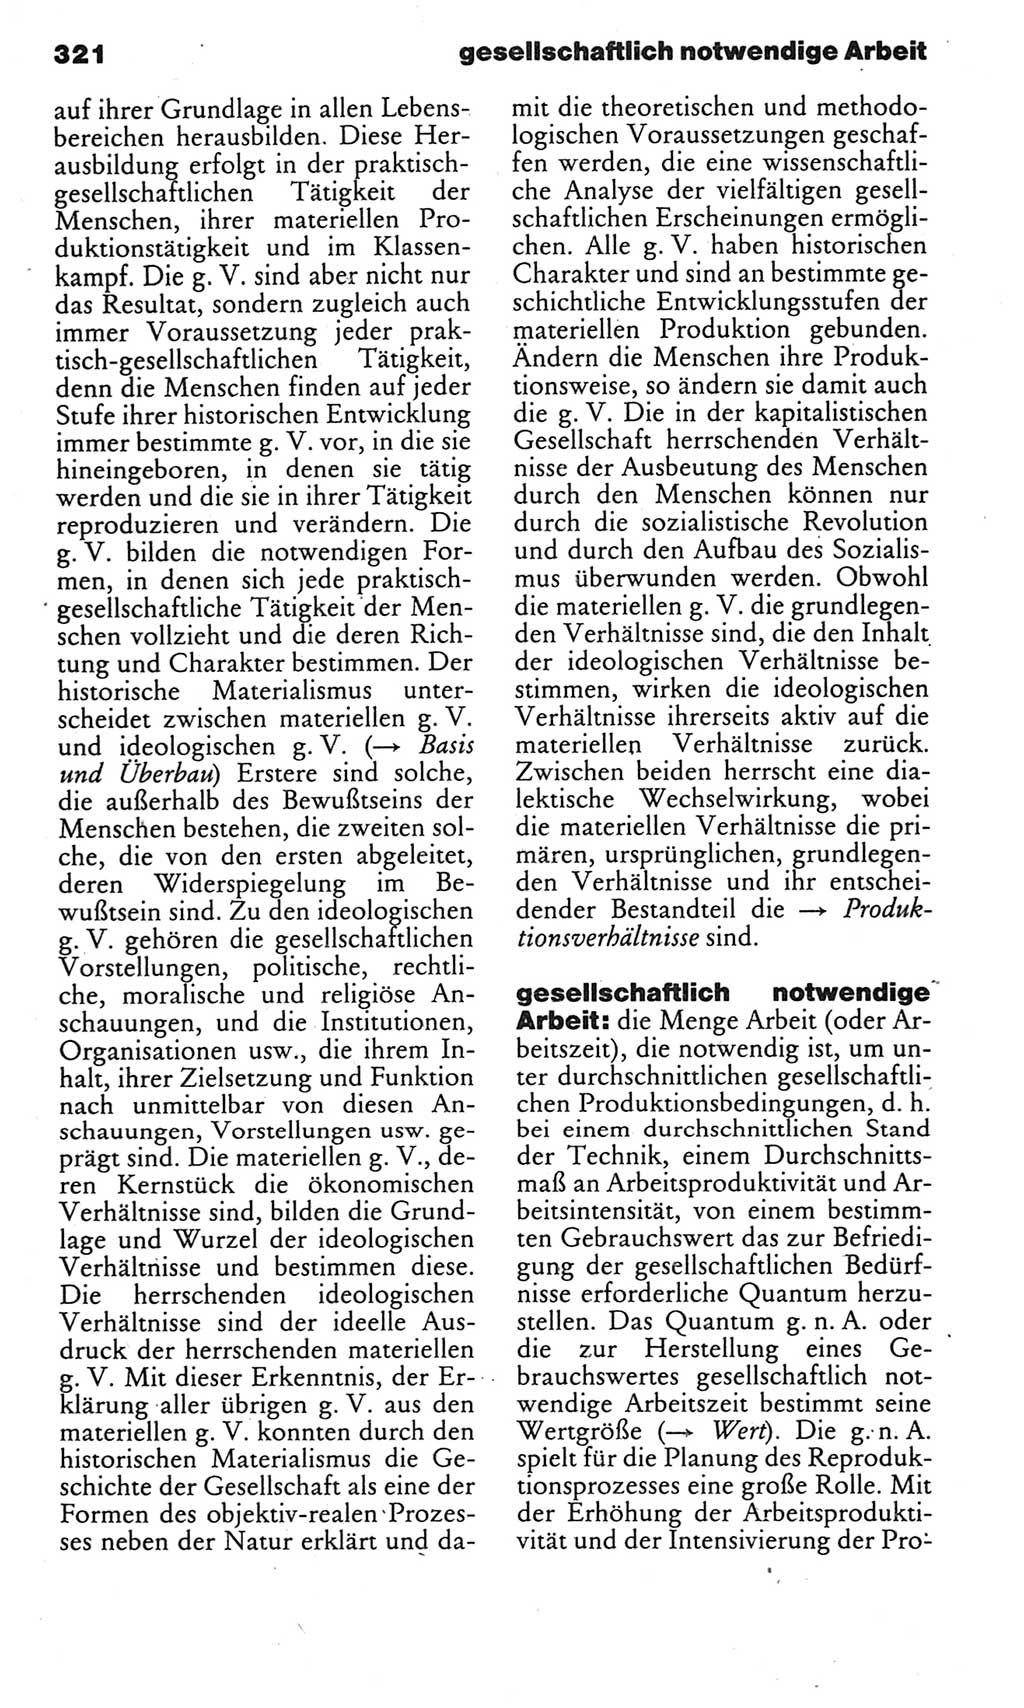 Kleines politisches Wörterbuch [Deutsche Demokratische Republik (DDR)] 1985, Seite 321 (Kl. pol. Wb. DDR 1985, S. 321)